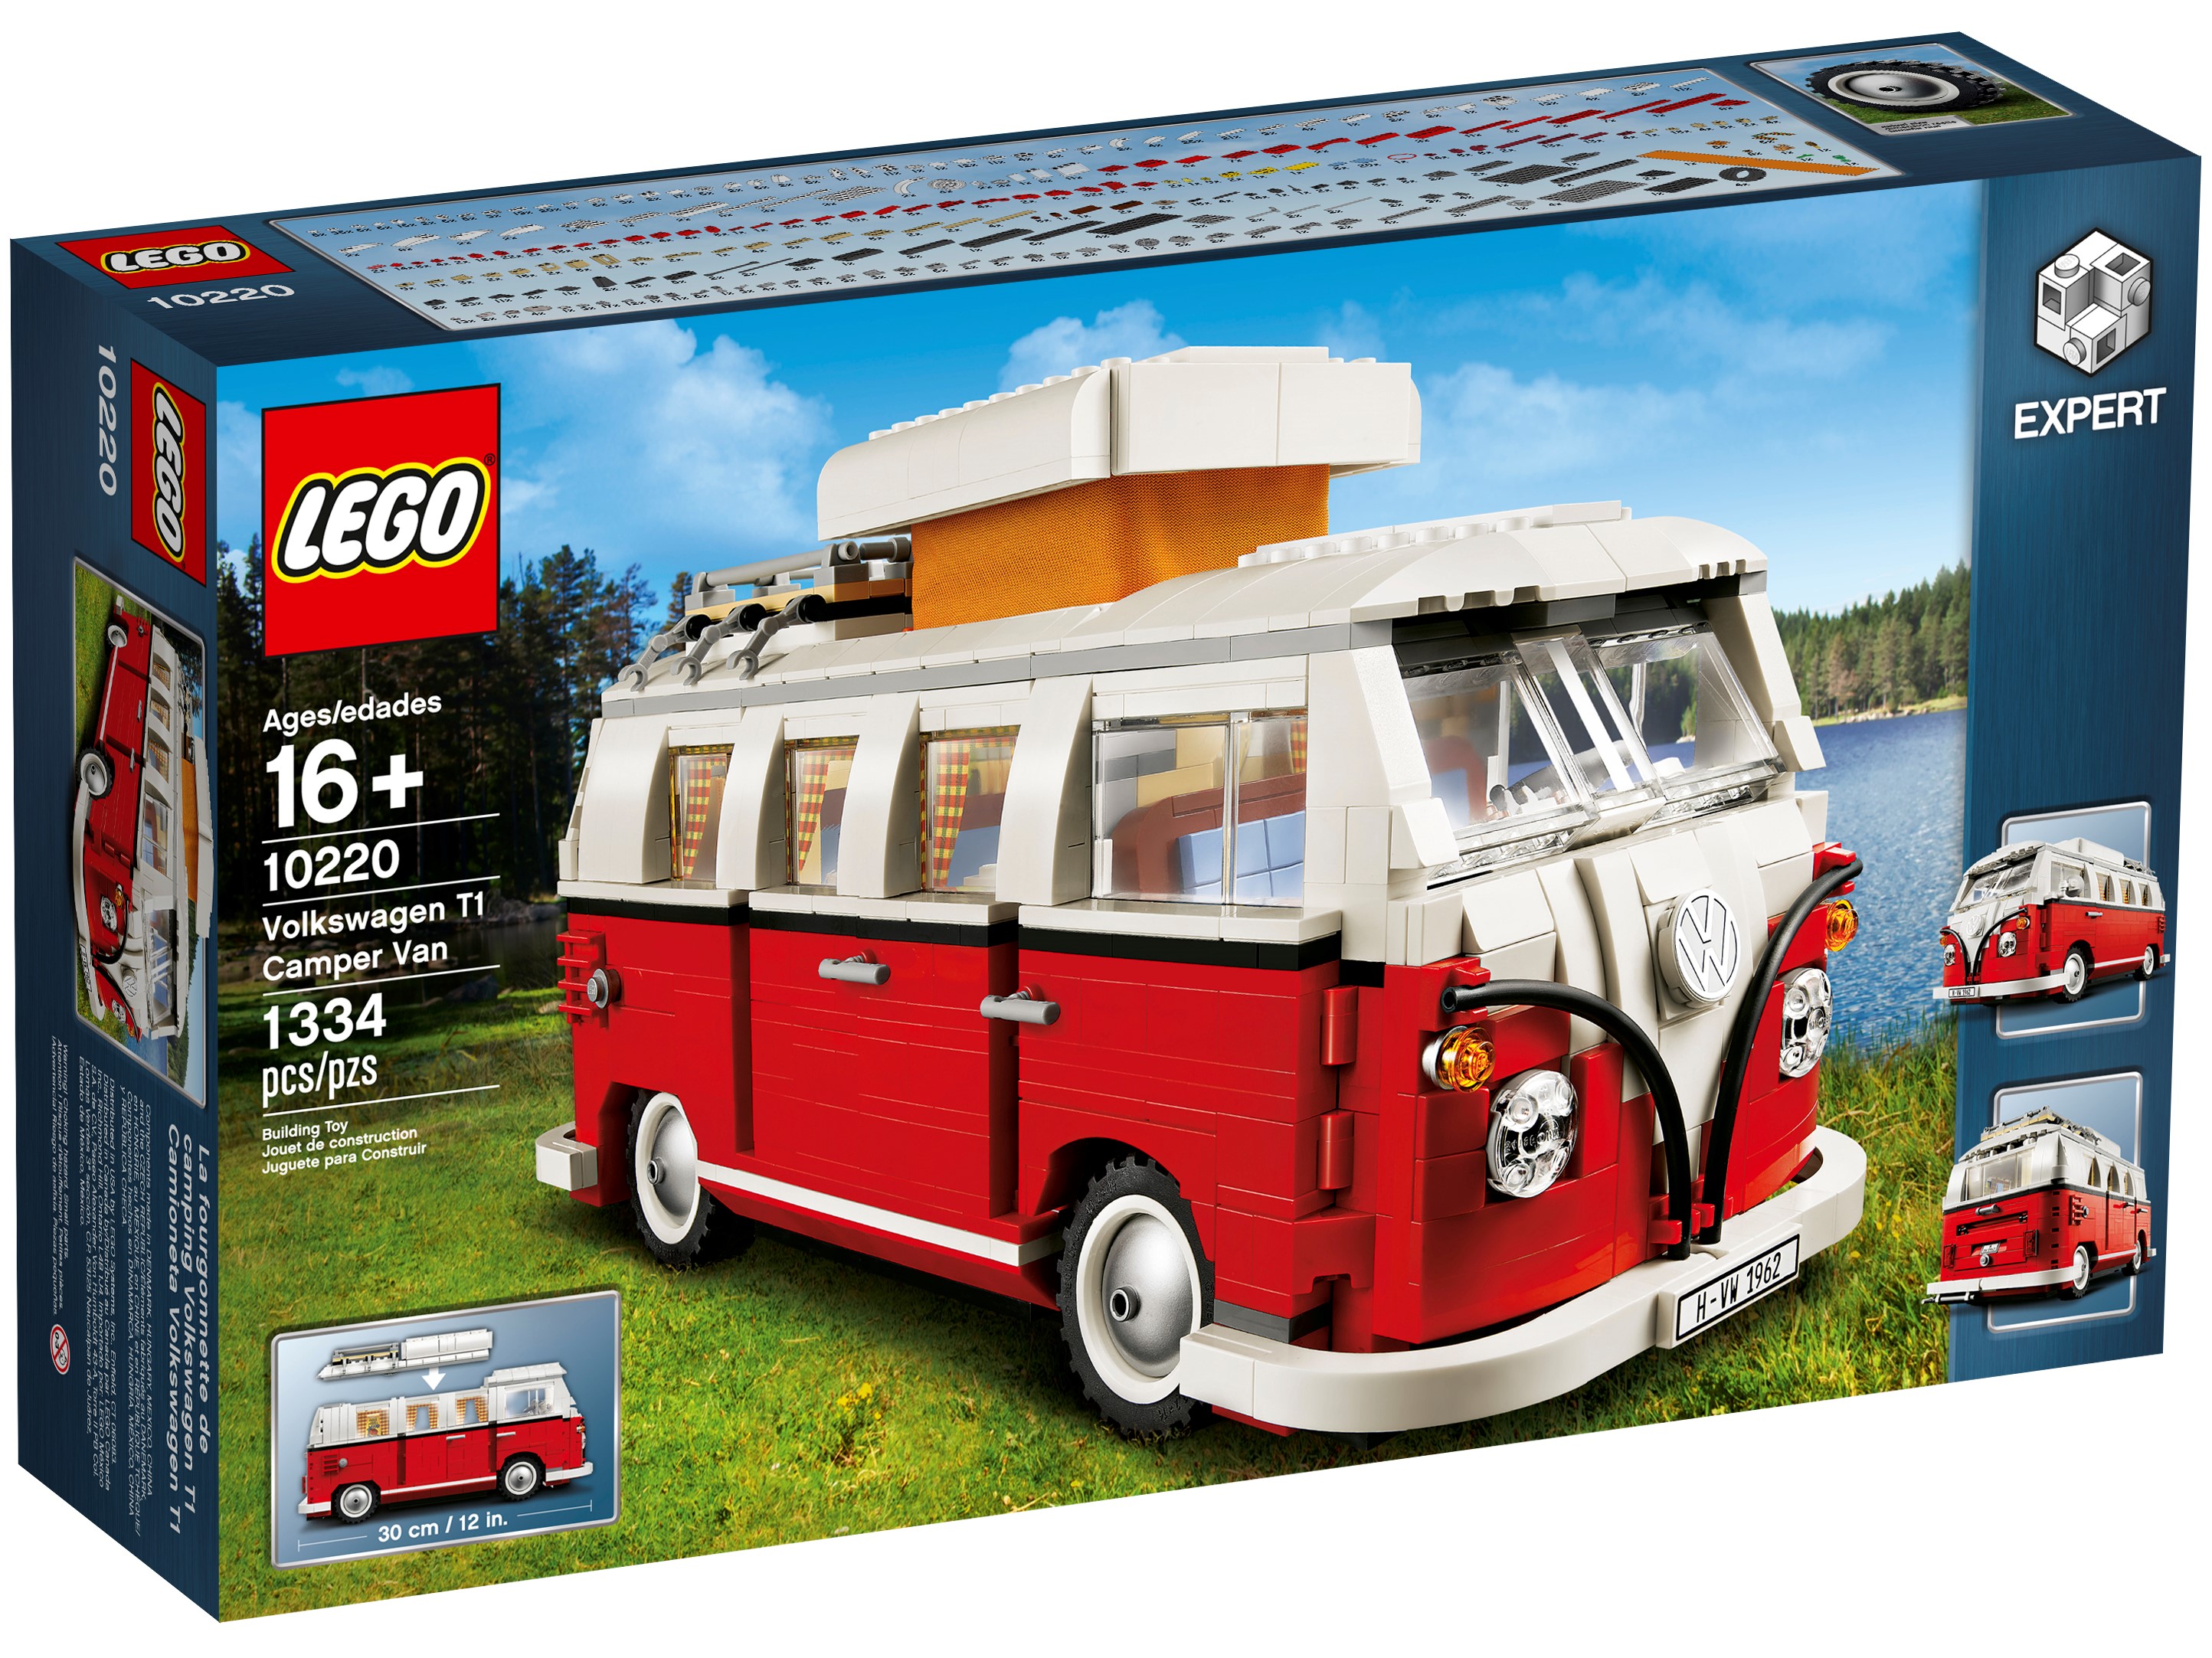 lego 10220 creator volkswagen t1 camper van construction toy